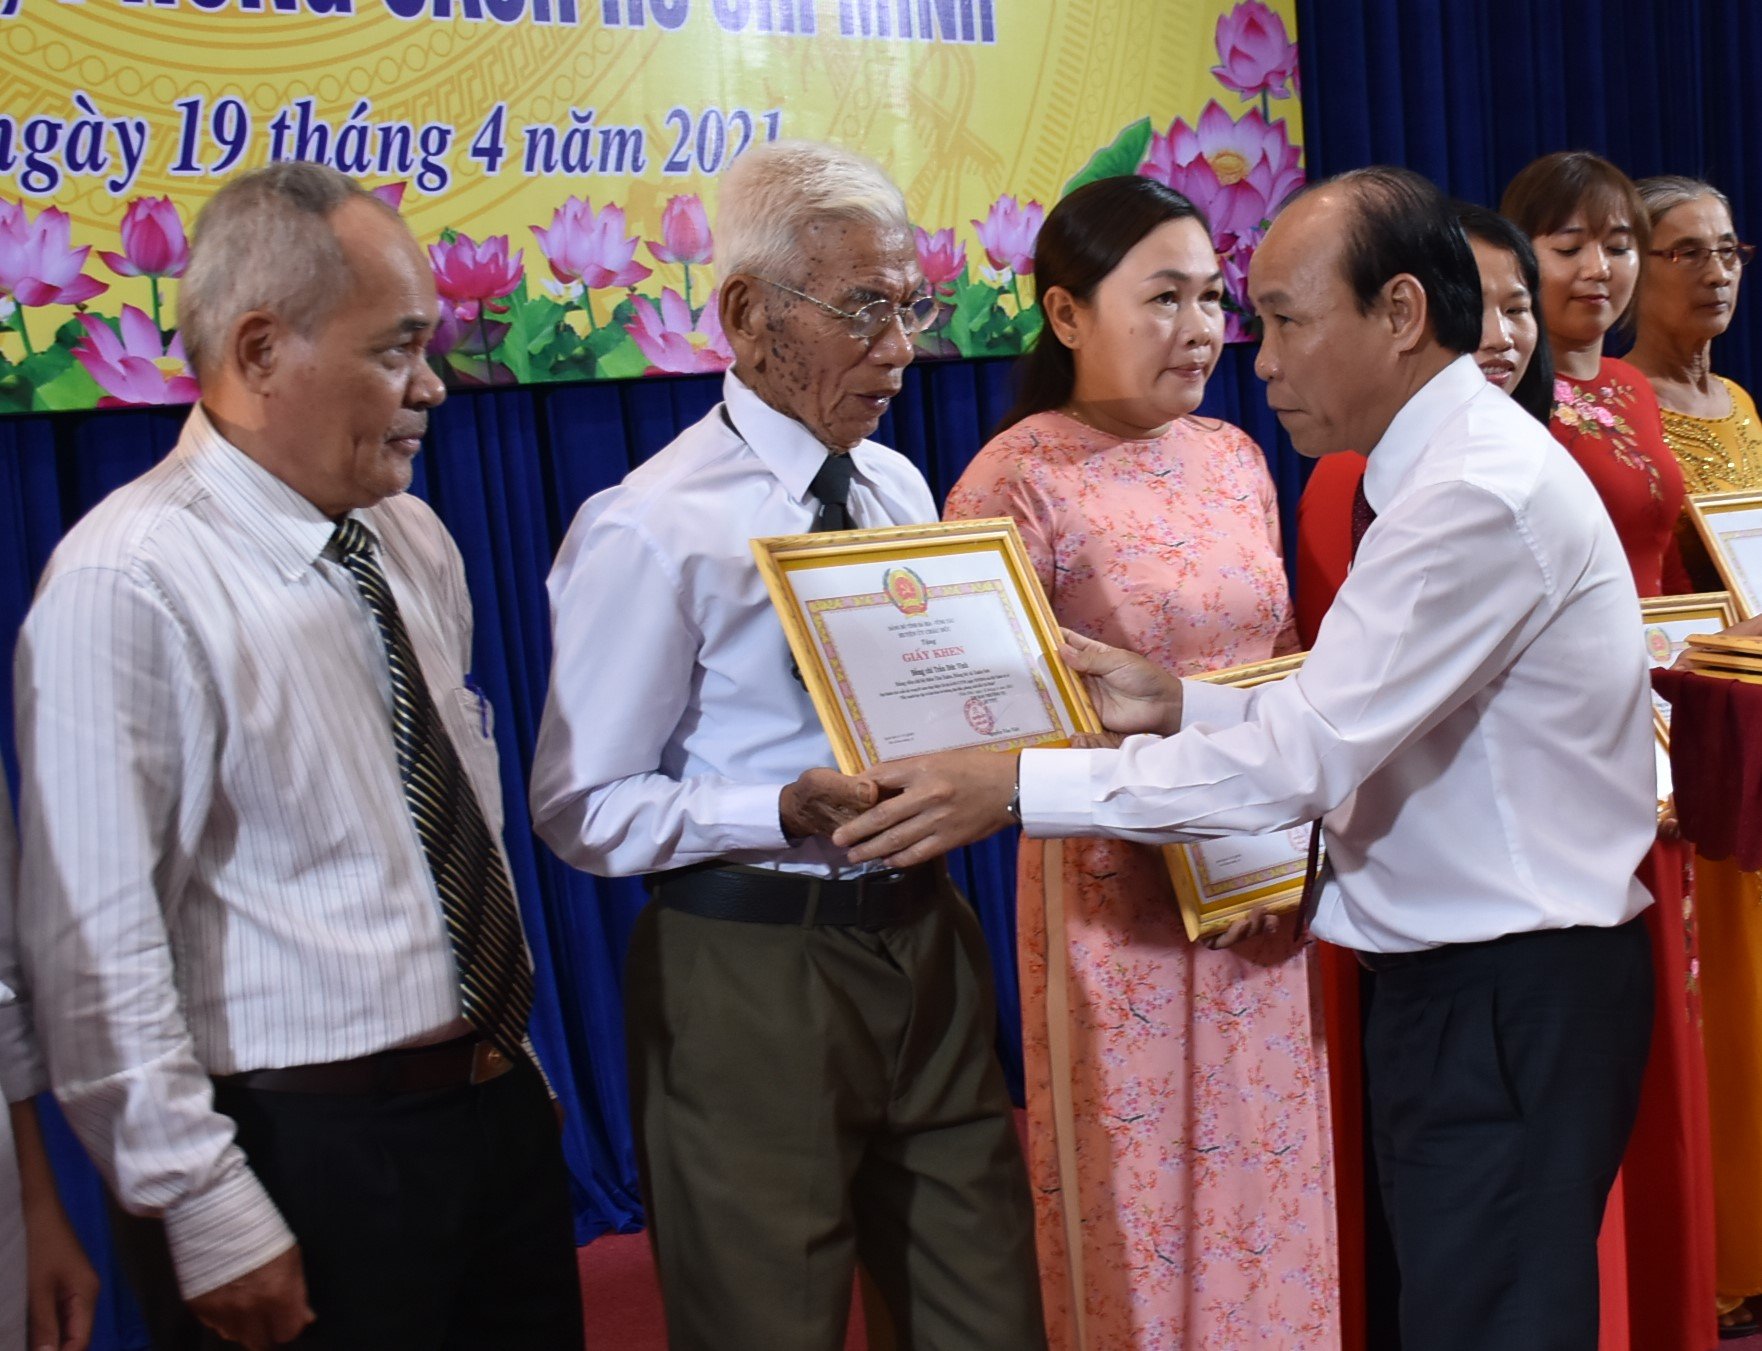 Ông Nguyễn Văn Việt, Bí thư Huyện ủy Châu Đức trao giấy khen cho các tập thể.